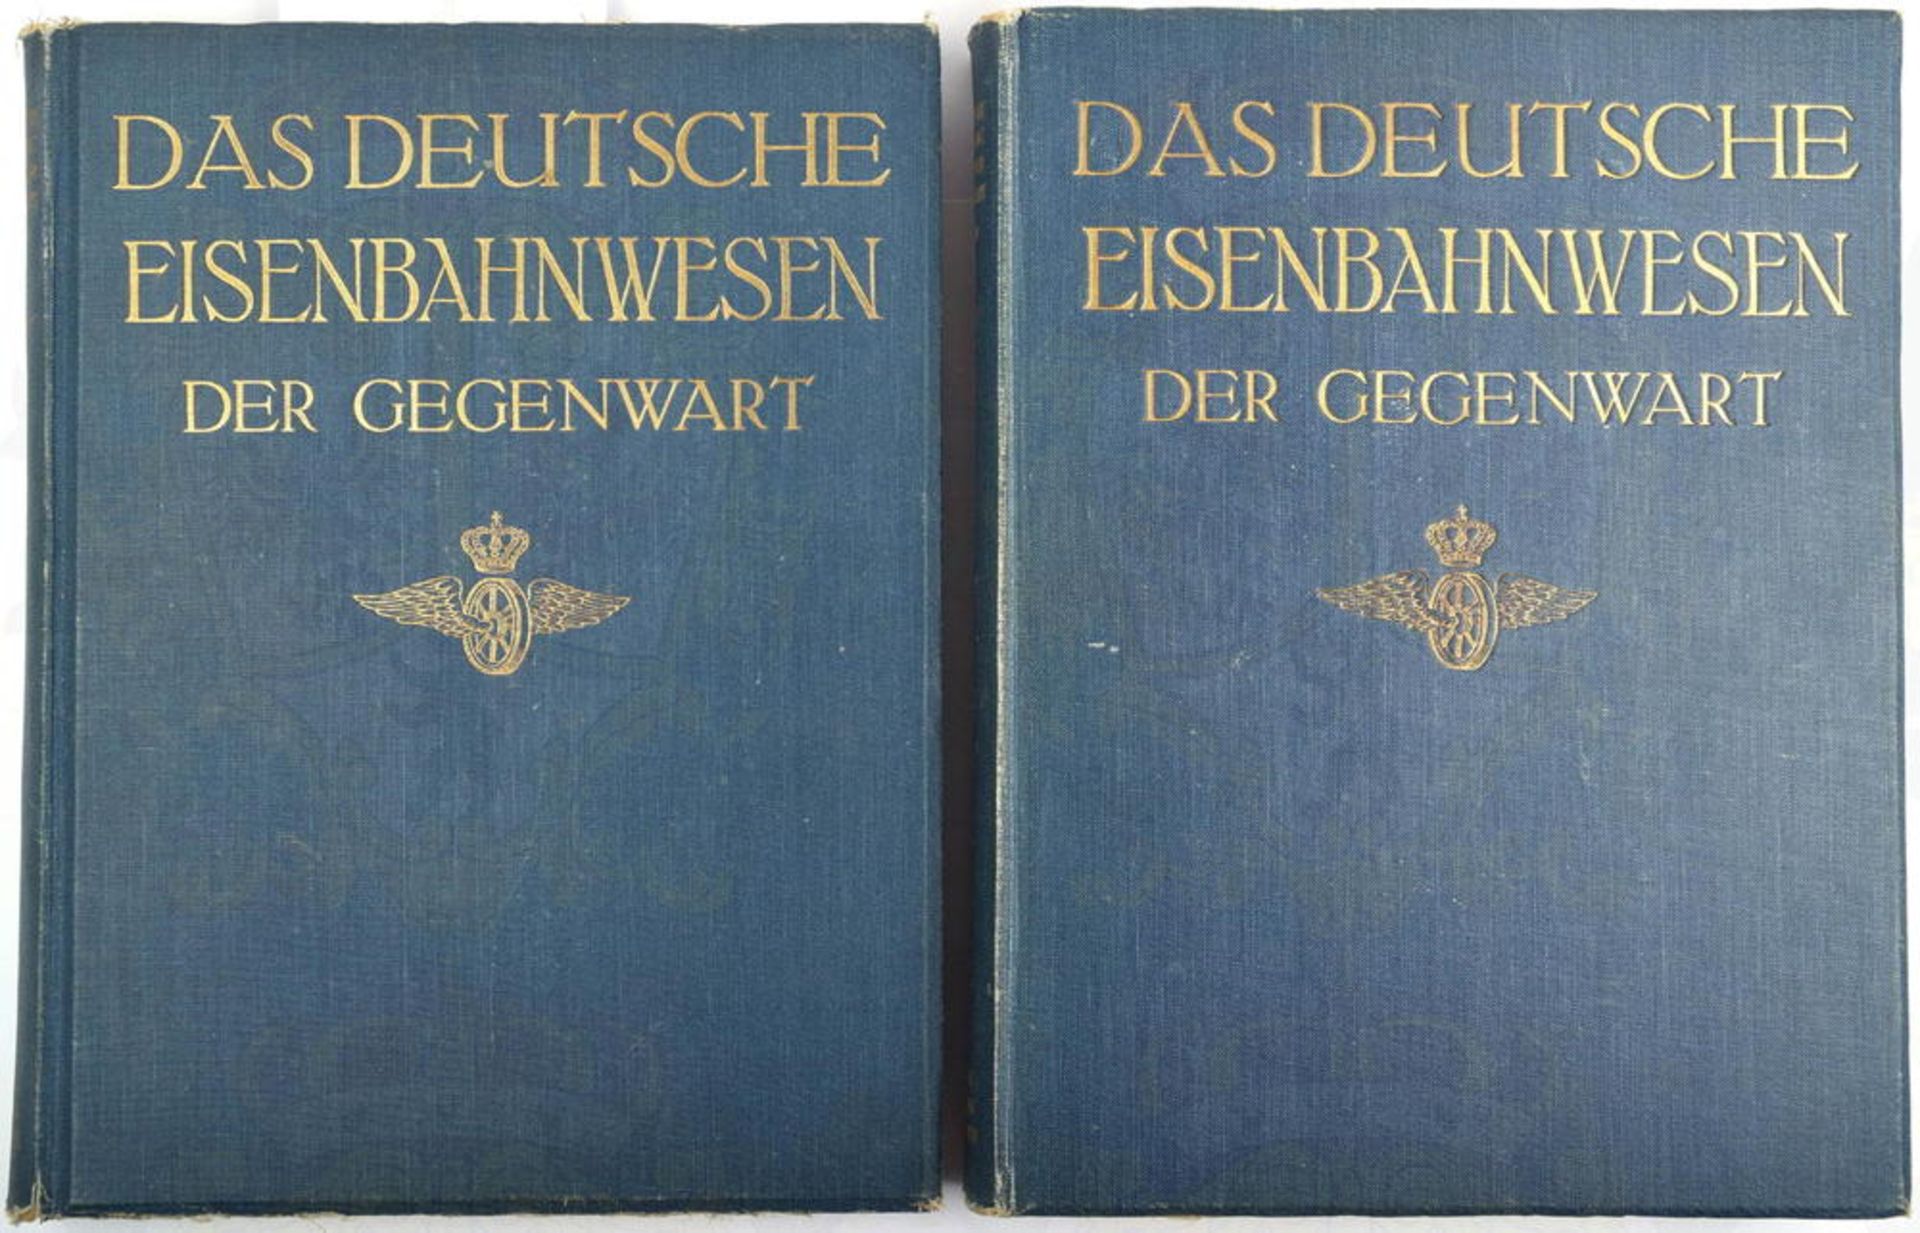 DAS DEUTSCHE EISENBAHNWESEN DER GEGENWART, Bde. 1 und 2, Berlin 1911, Fotos, tls. farb. Abb., Tafeln